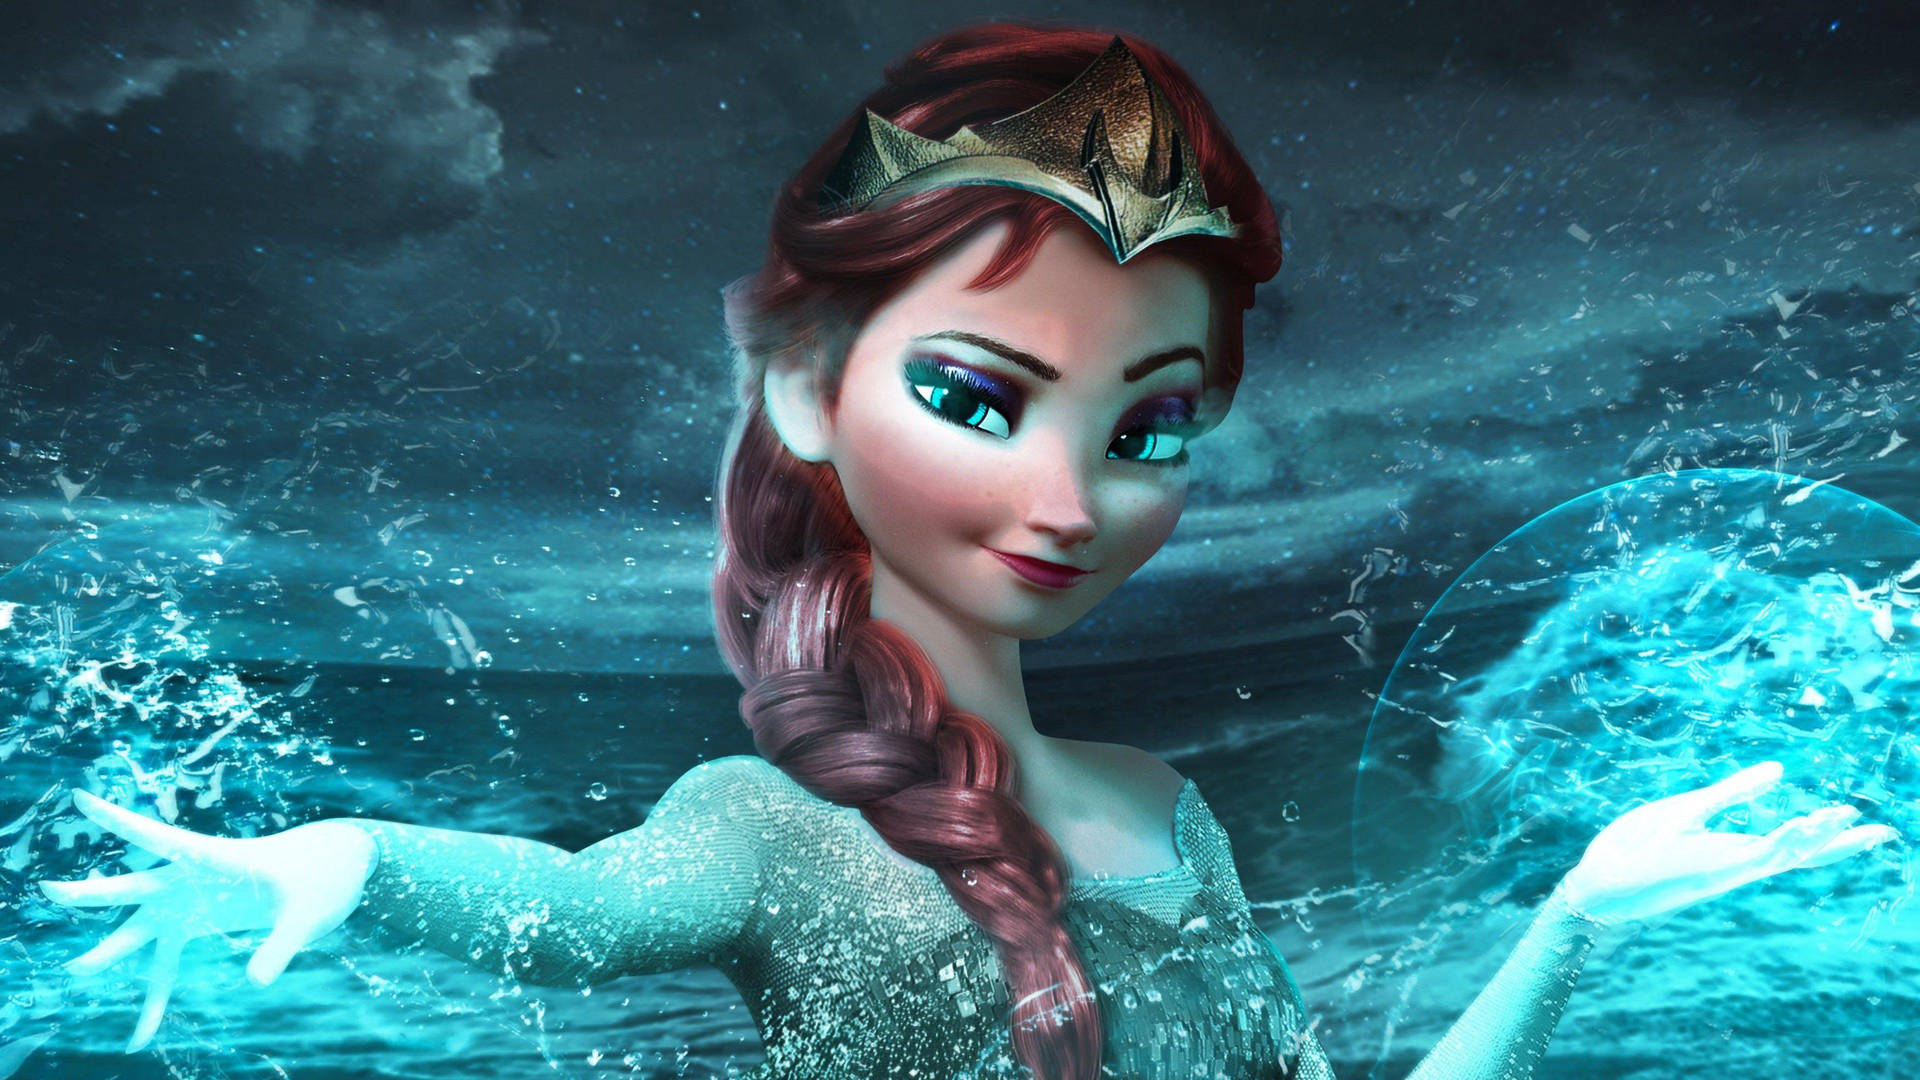 The Snow Queen Elsa Frozen 2 Background